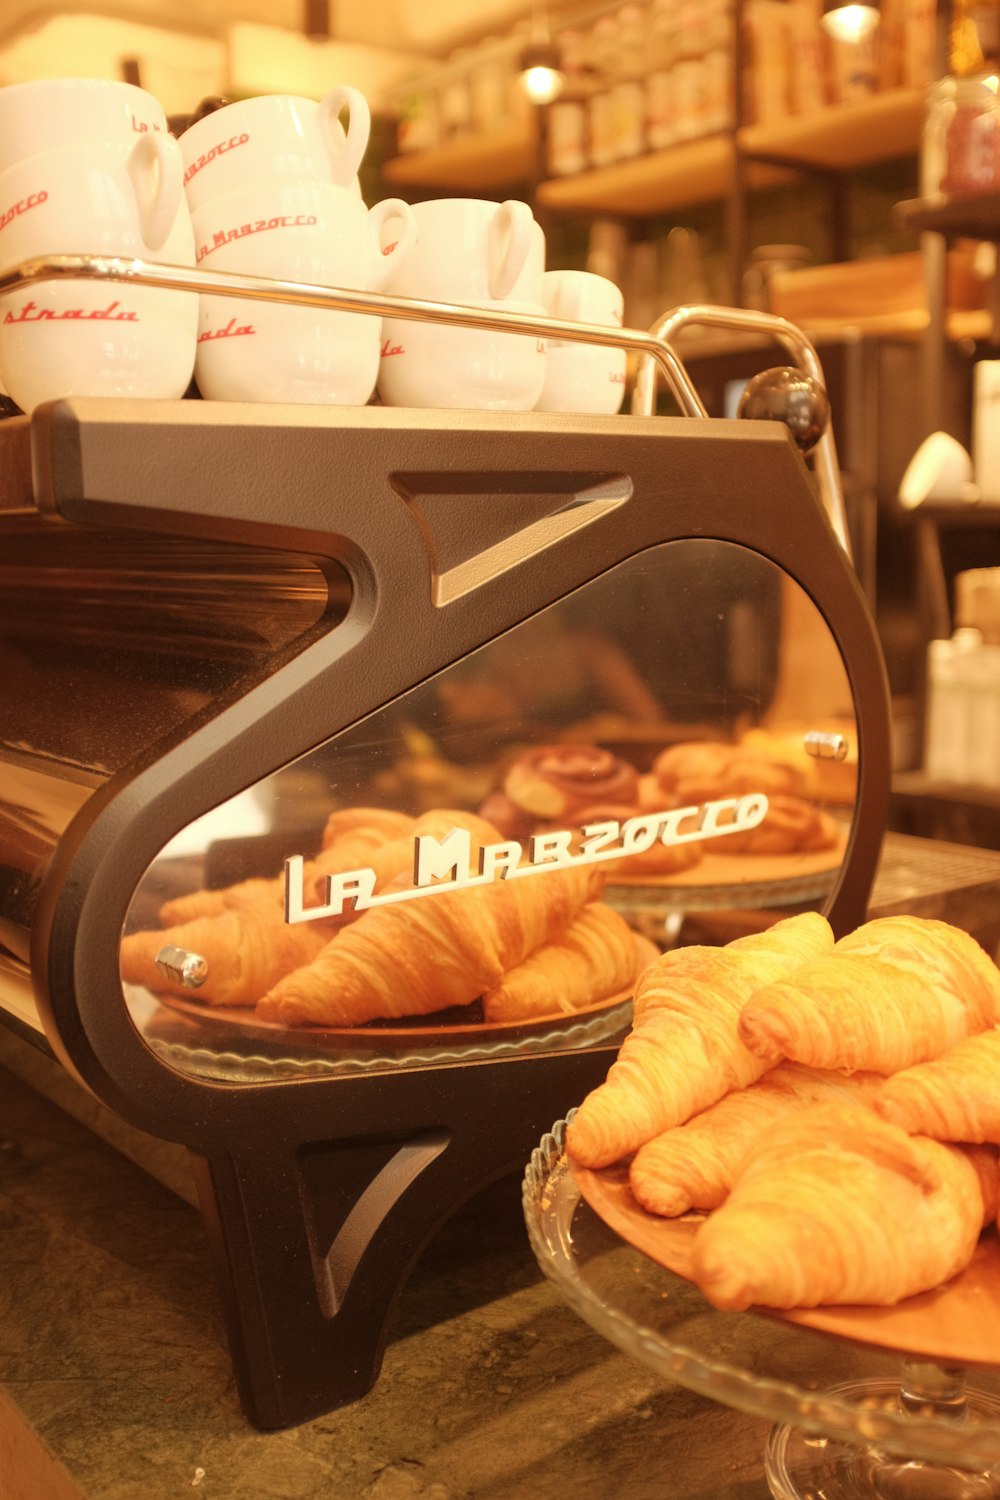 Croissants und Gebäck auf der Theke in einer Bäckerei